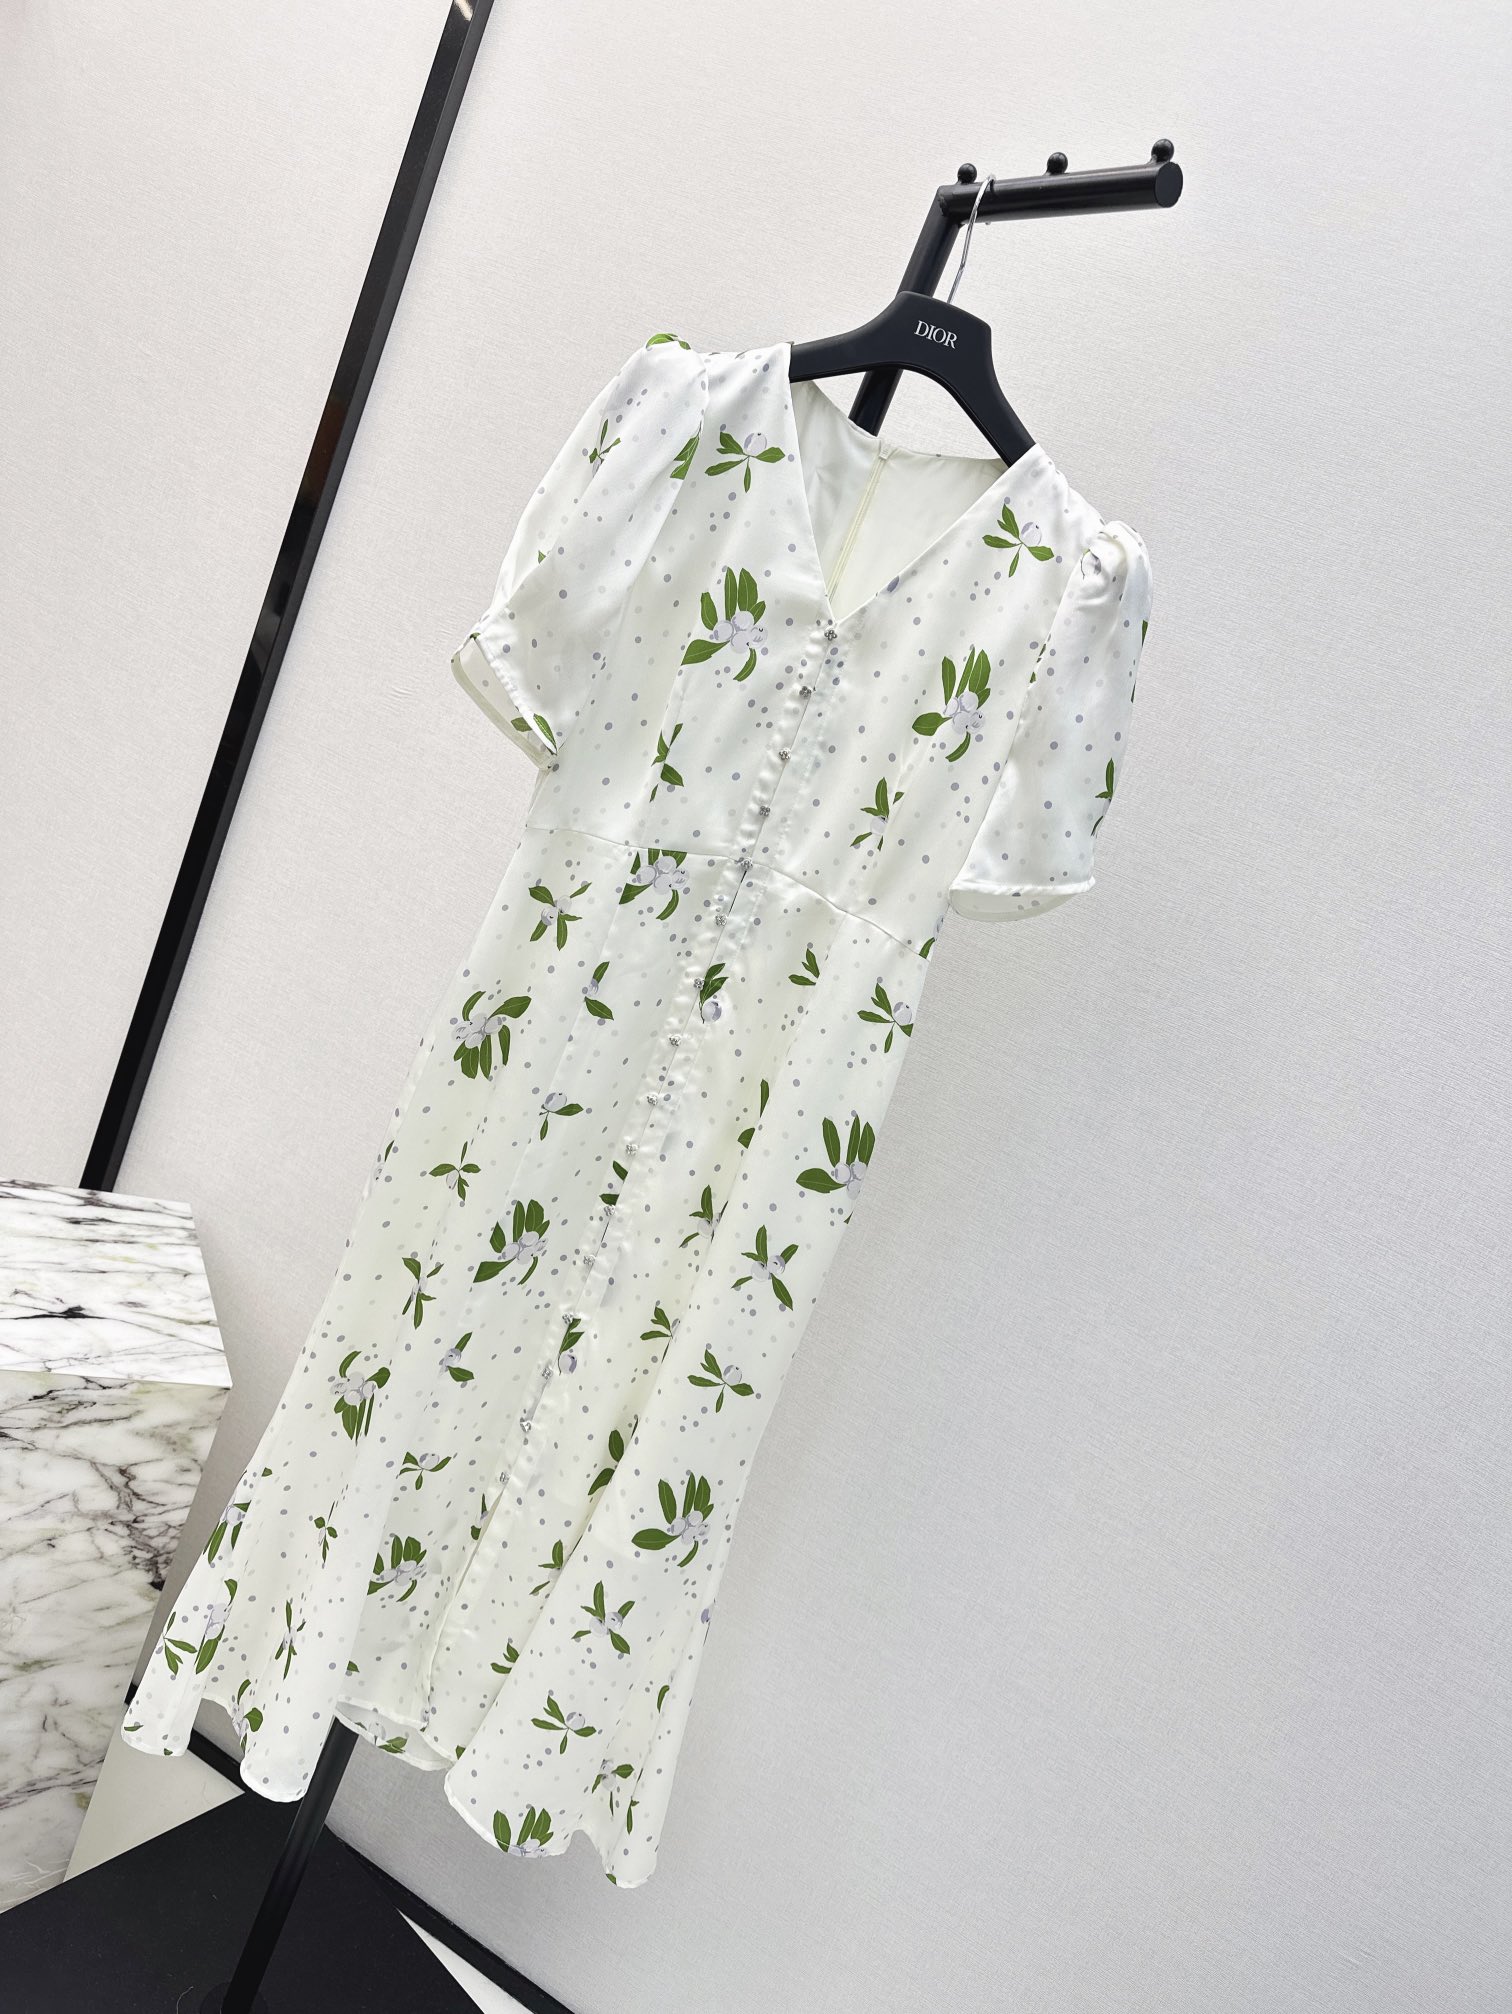 独家首发时髦小众设计24Ss春夏最新款印花连衣裙淡雅清新的度假风气息优雅花卉图案立体收腰版型浪漫优雅的白